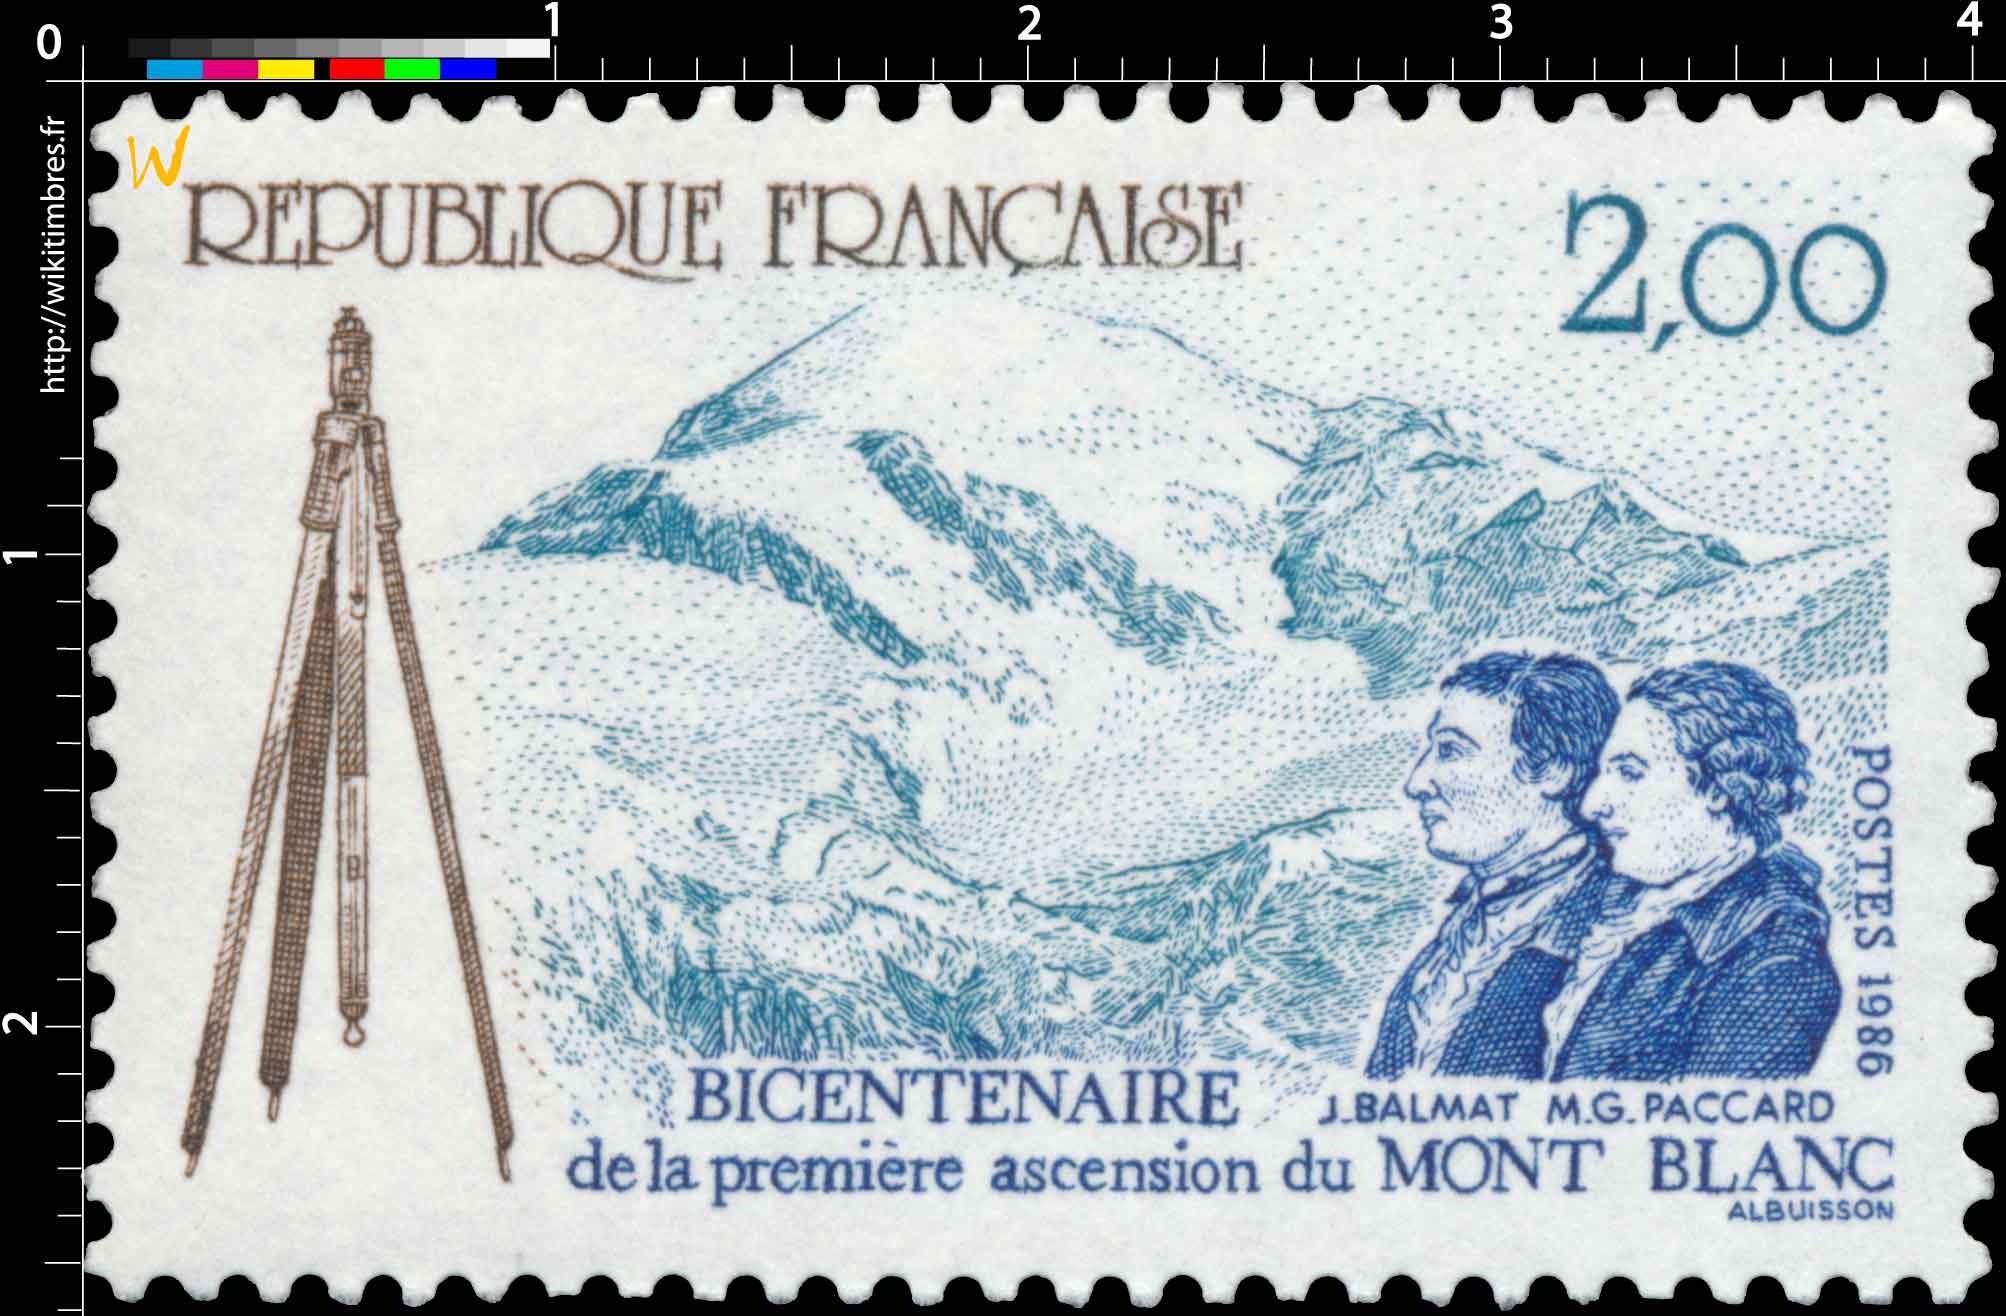 1986 BICENTENAIRE de la première ascension du MONT BLANC J. BALMAT M. G. PACCARD